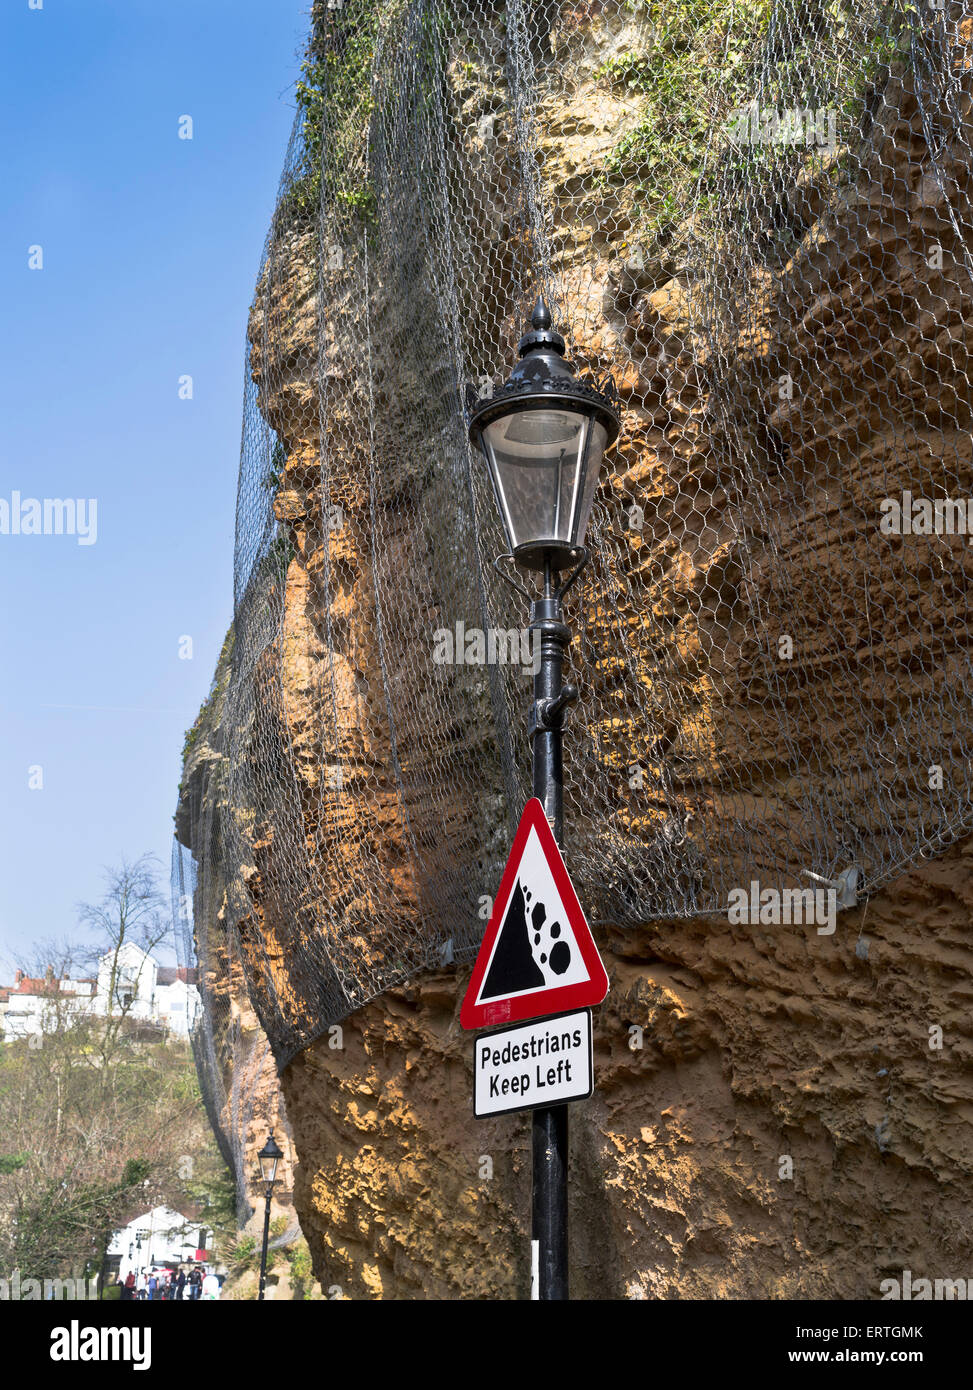 dh Cliff érosion ENVIRONNEMENT Royaume-Uni signe d'avertissement de chute de roches falaise érosion fil mesh danger triangle sécurité Banque D'Images